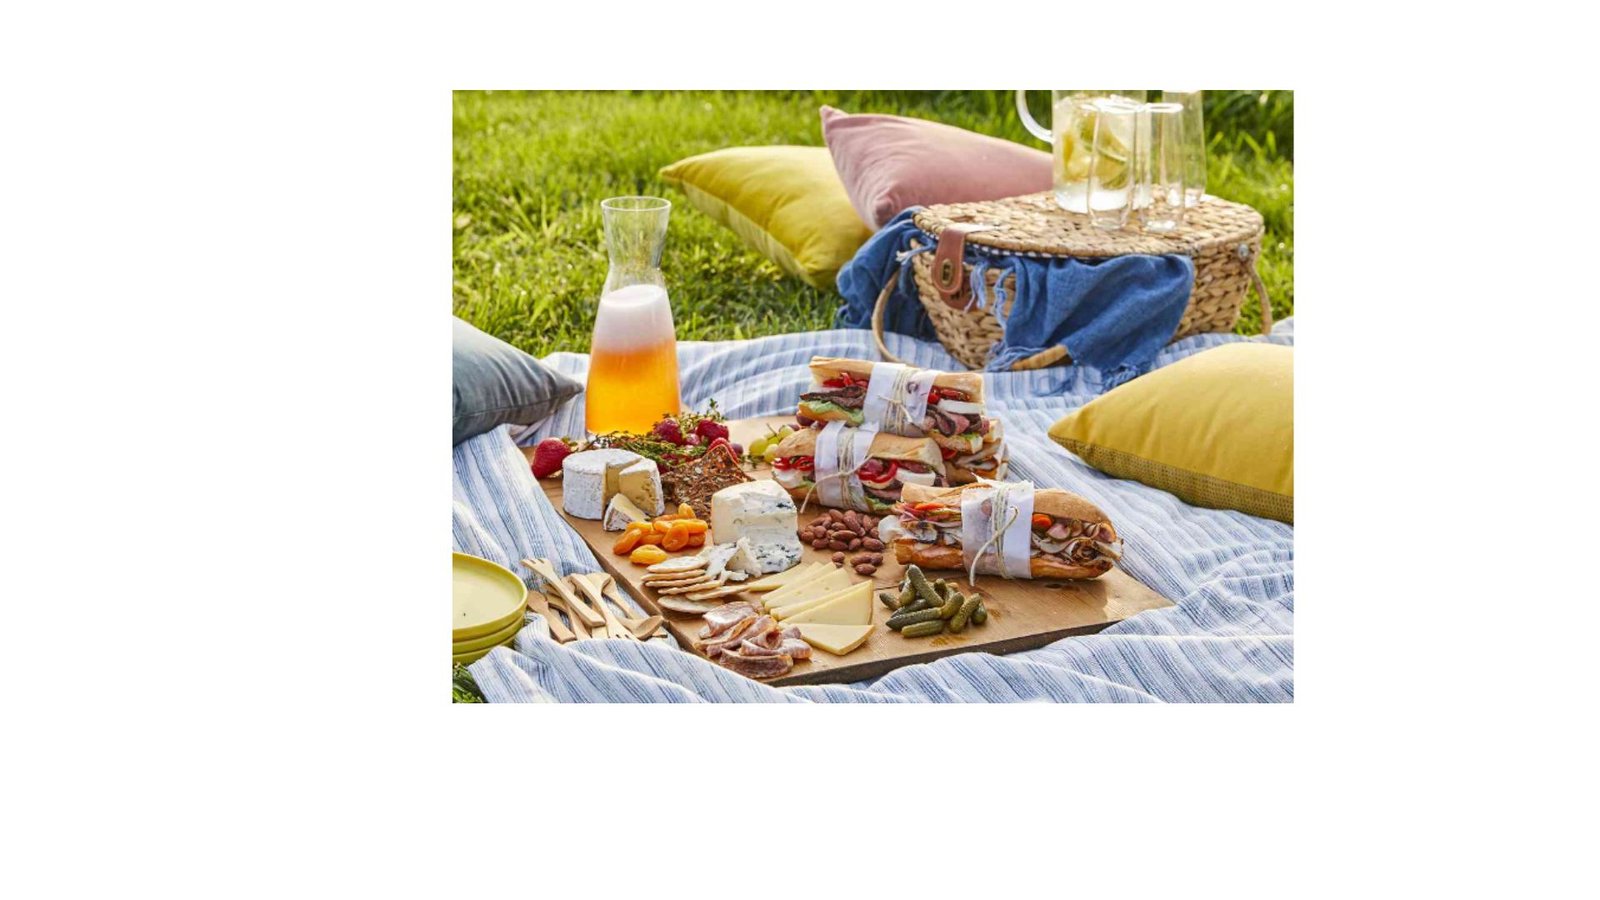 romantic recipes for picnics